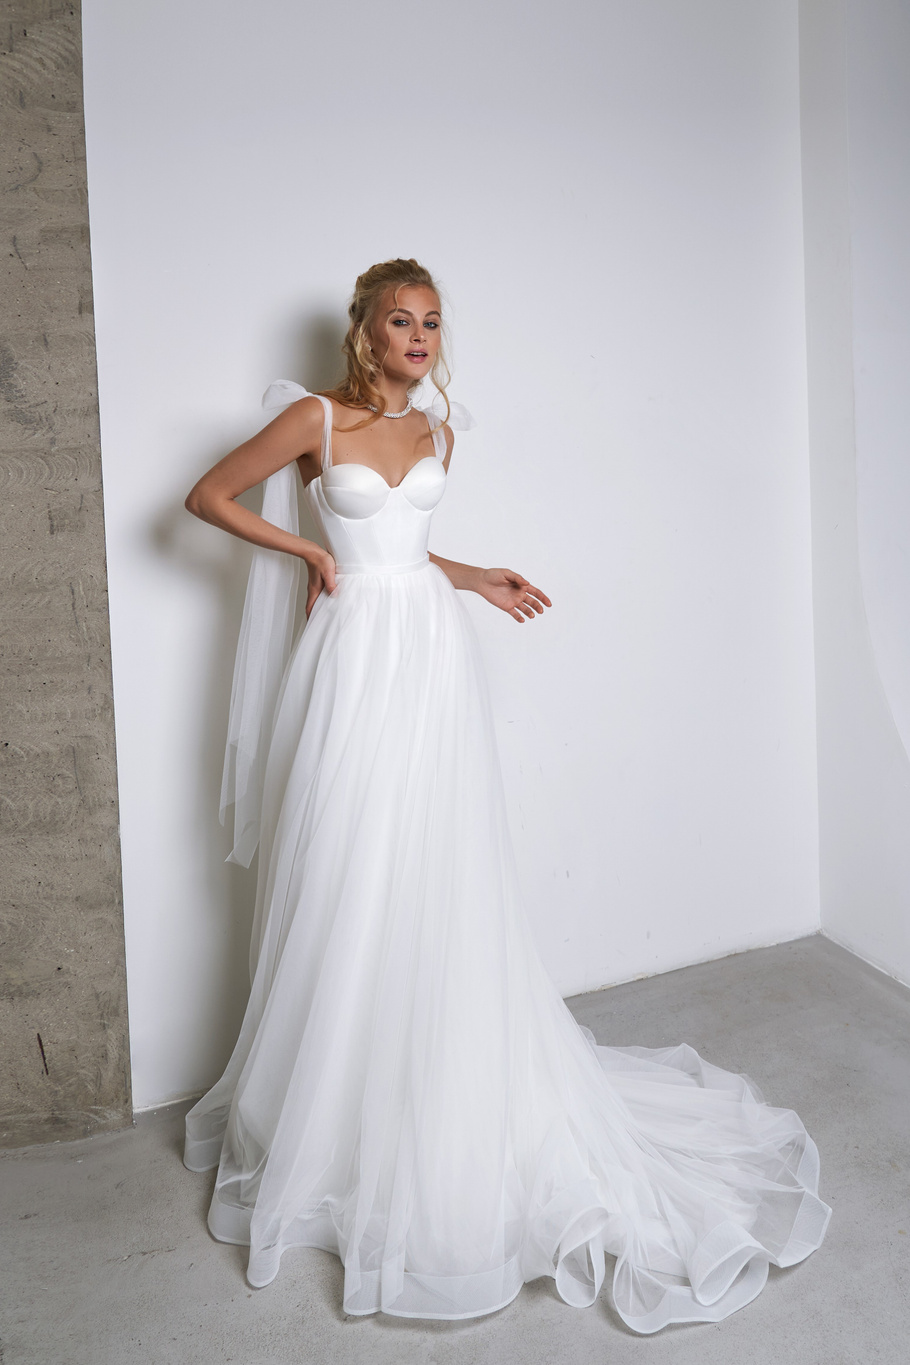 Свадебное платье «Олин» Марта — купить в Екатеринбурге платье Олин из коллекции 2021 года